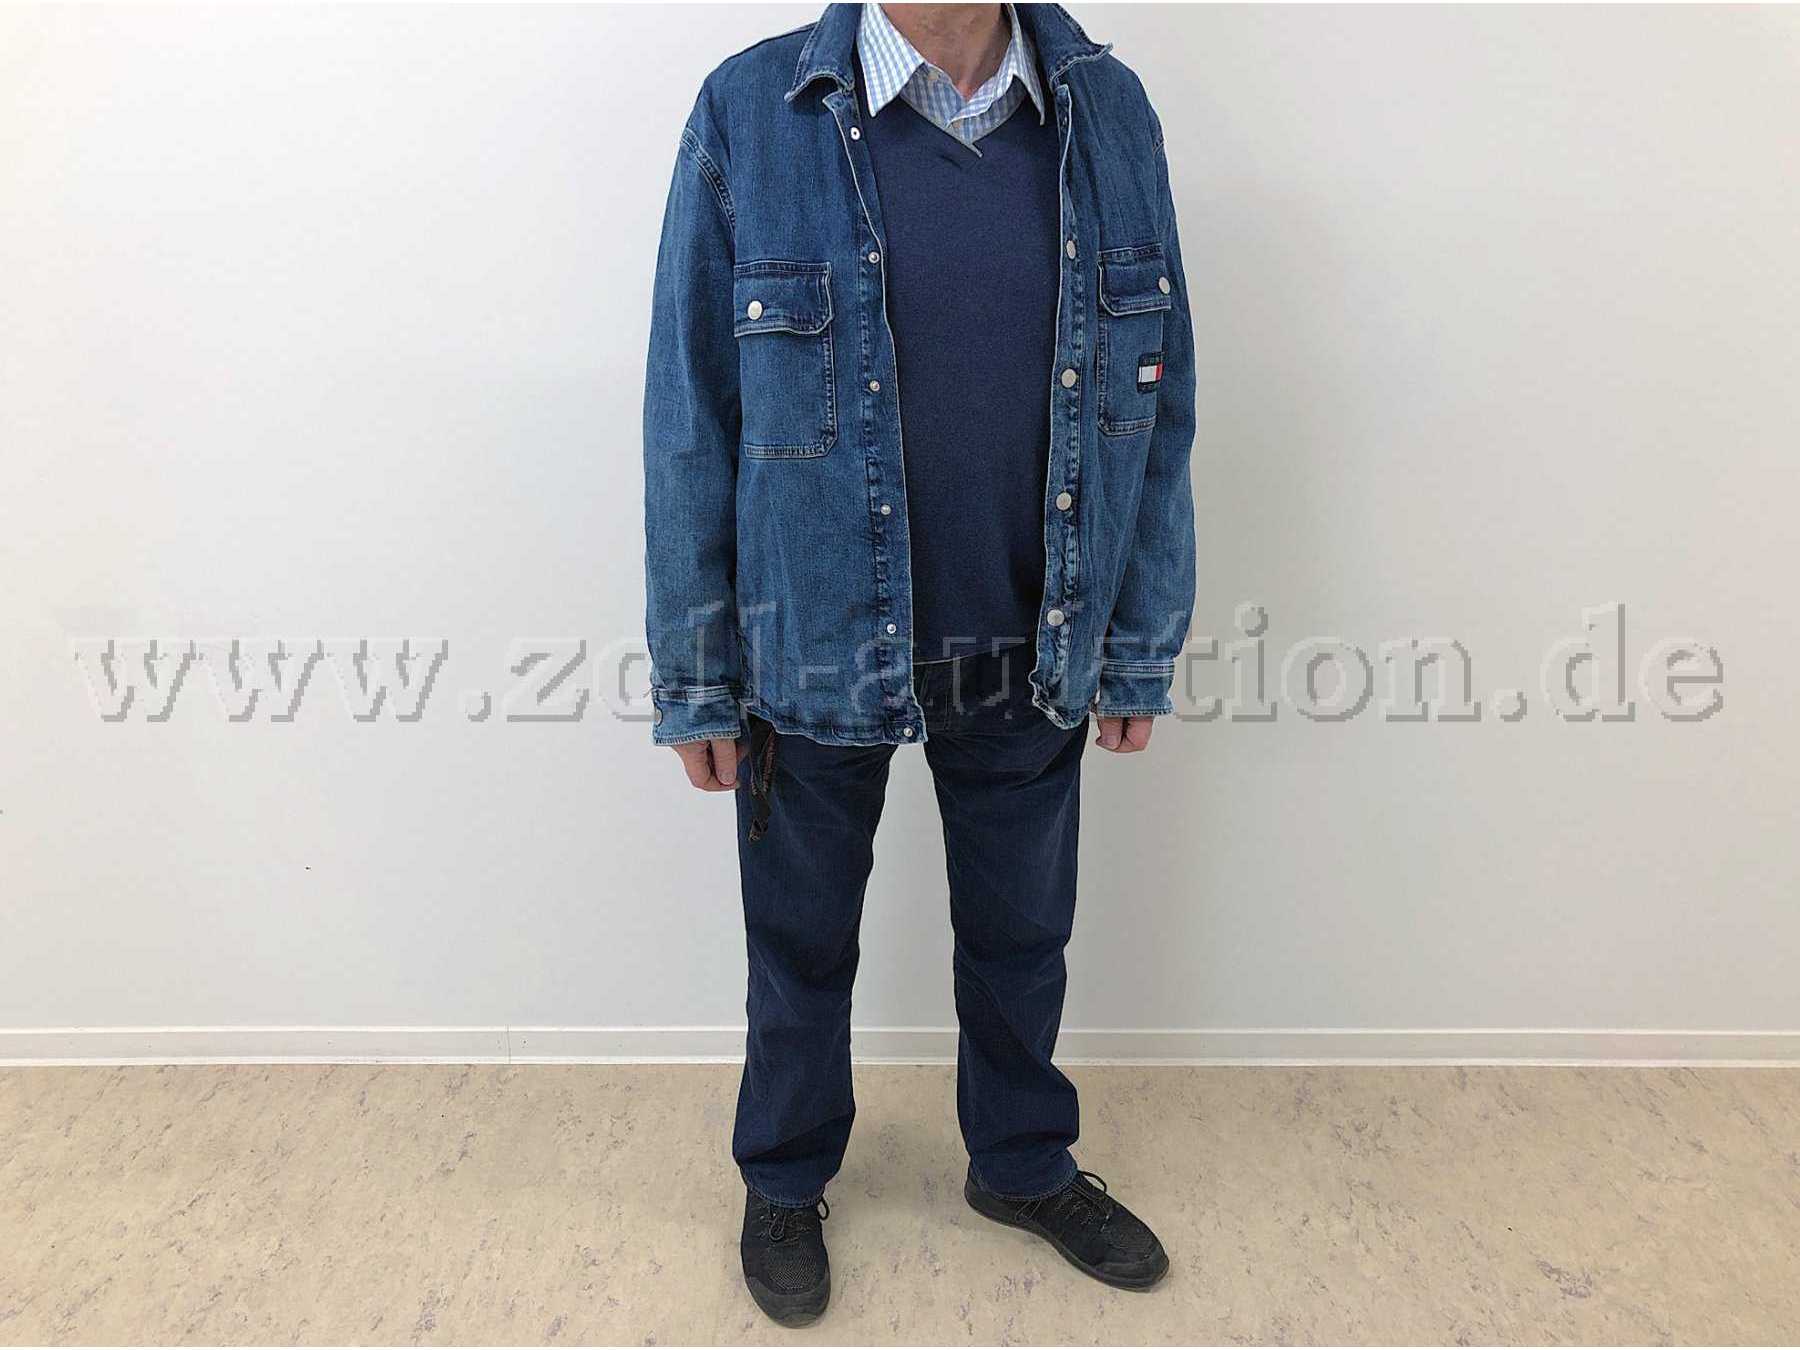 1 neuwertige Jeans-Jacke von Tommy Hilfiger "Utility Shirt Jacket", Größe L , Farbe Jeansblau. Tragebeispiel.